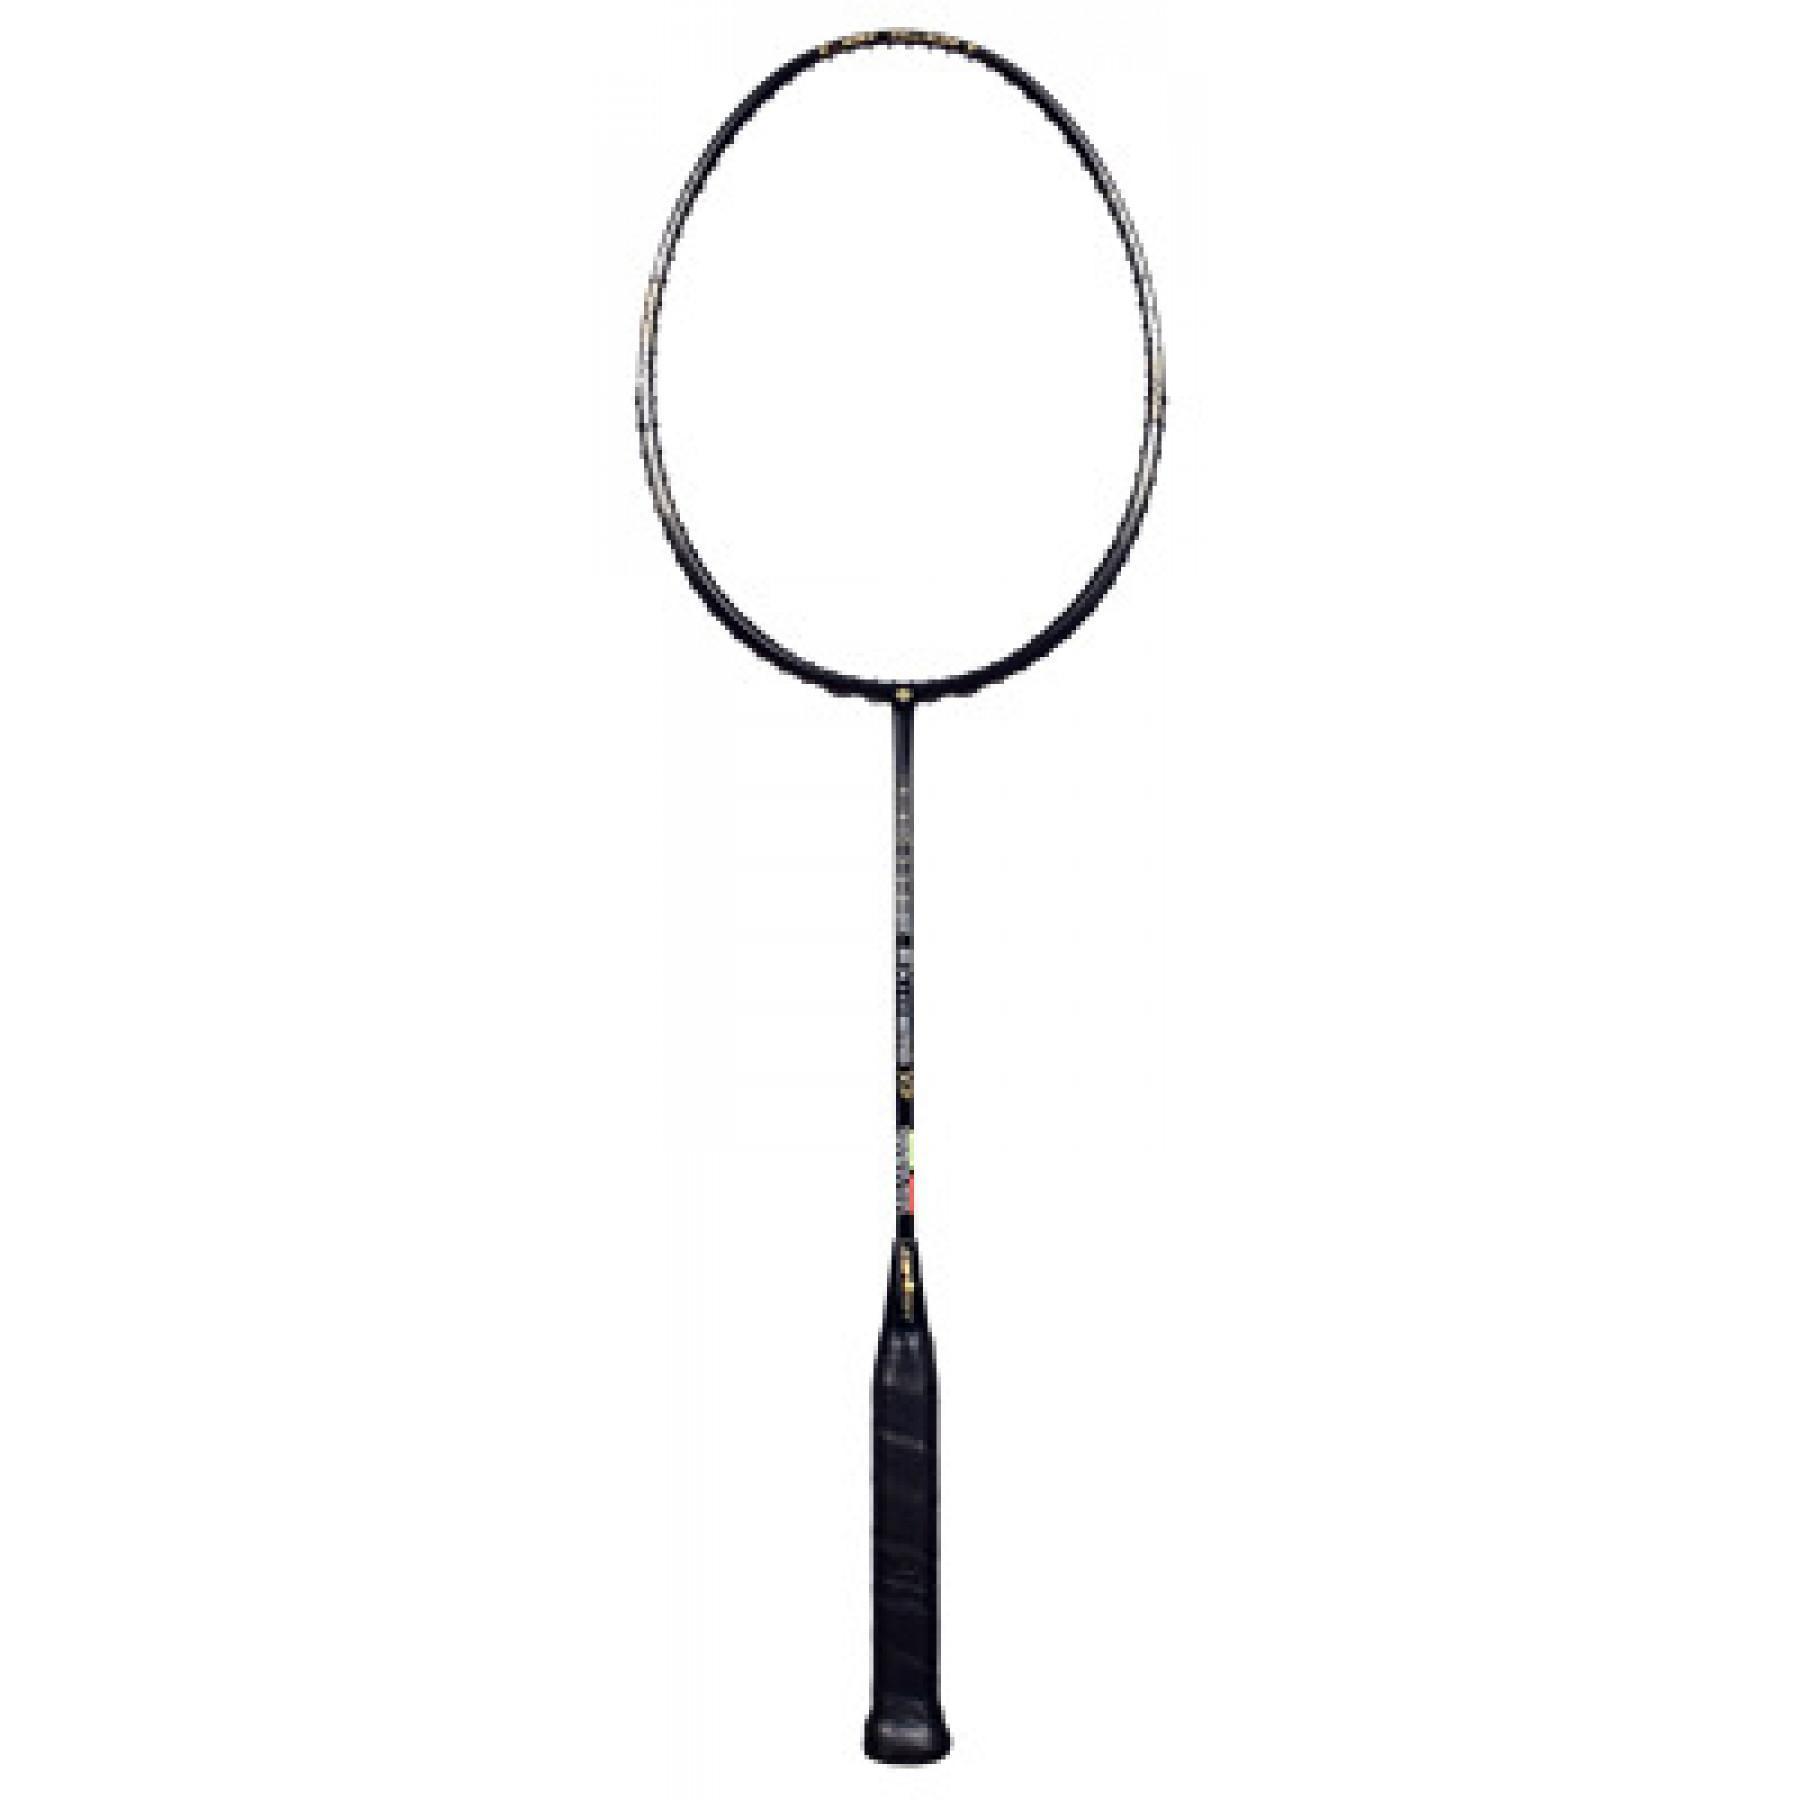 Badmintonracket Dunlop Ex hybrid Xp